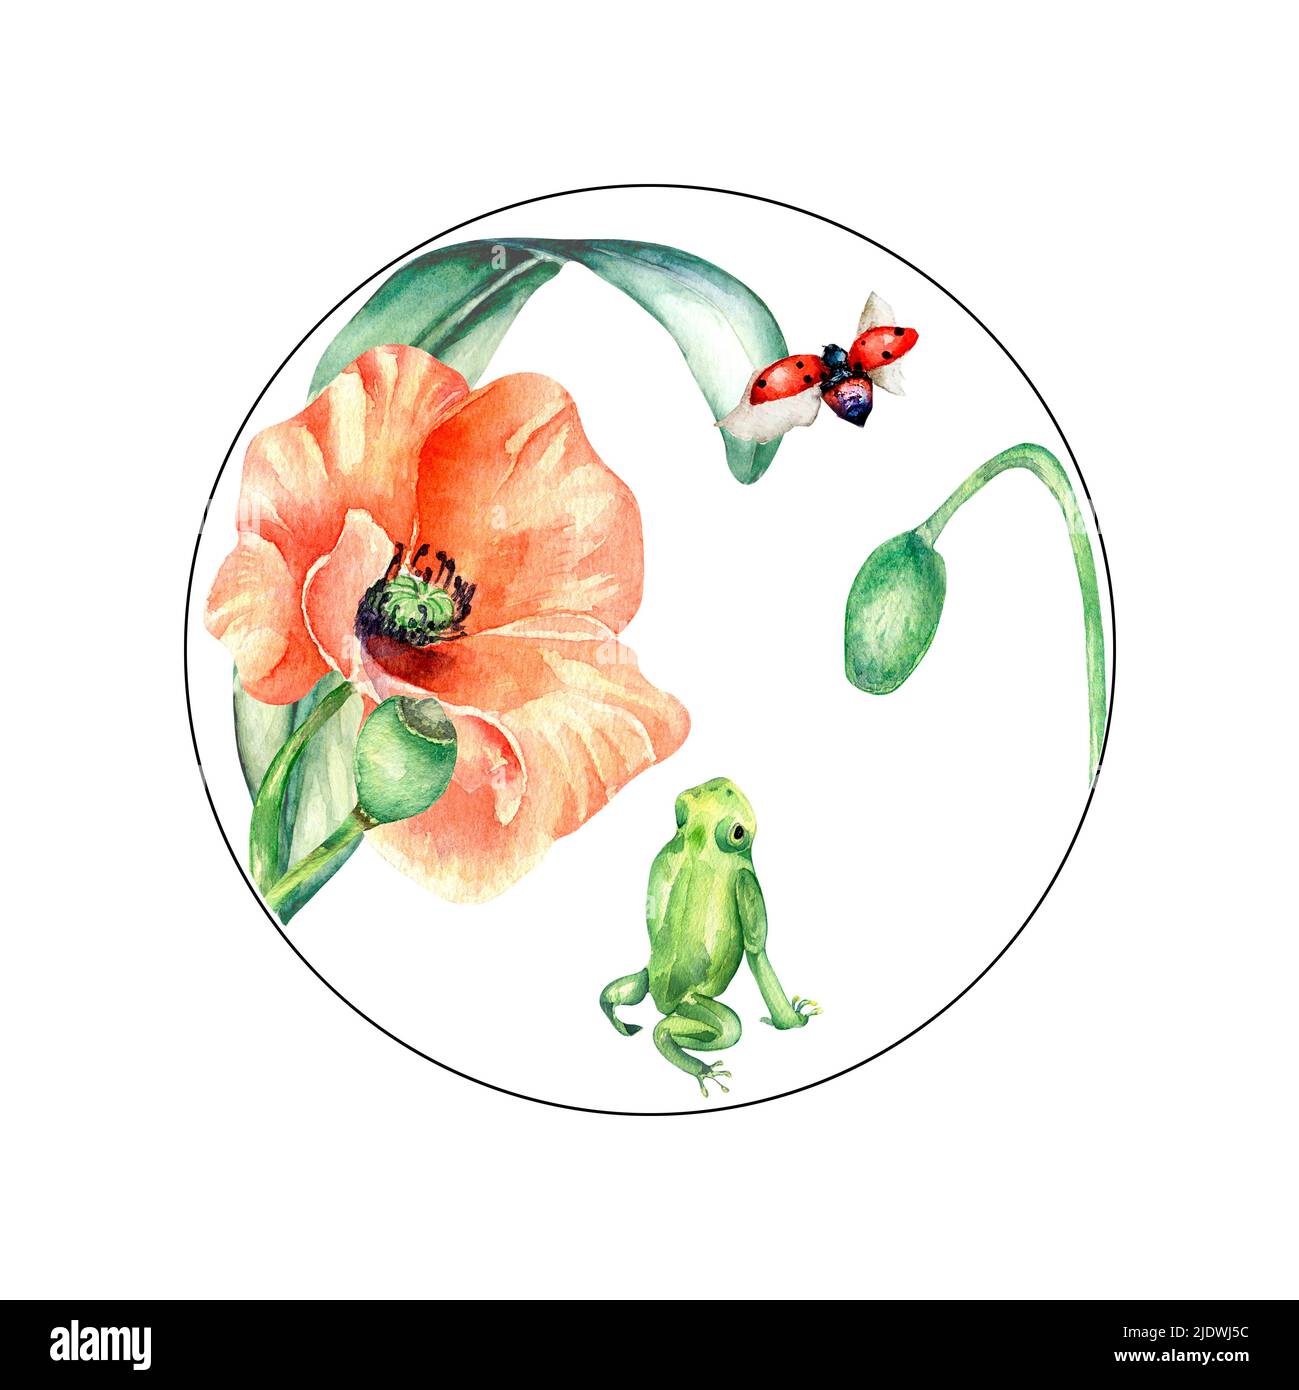 Cadre circulaire avec une illustration blanche représentant une grenouille, un coccinelle et un coquelicot. Composition de modèle de carte lumineuse peinte à la main. Élément fleurs de prairie, des Banque D'Images